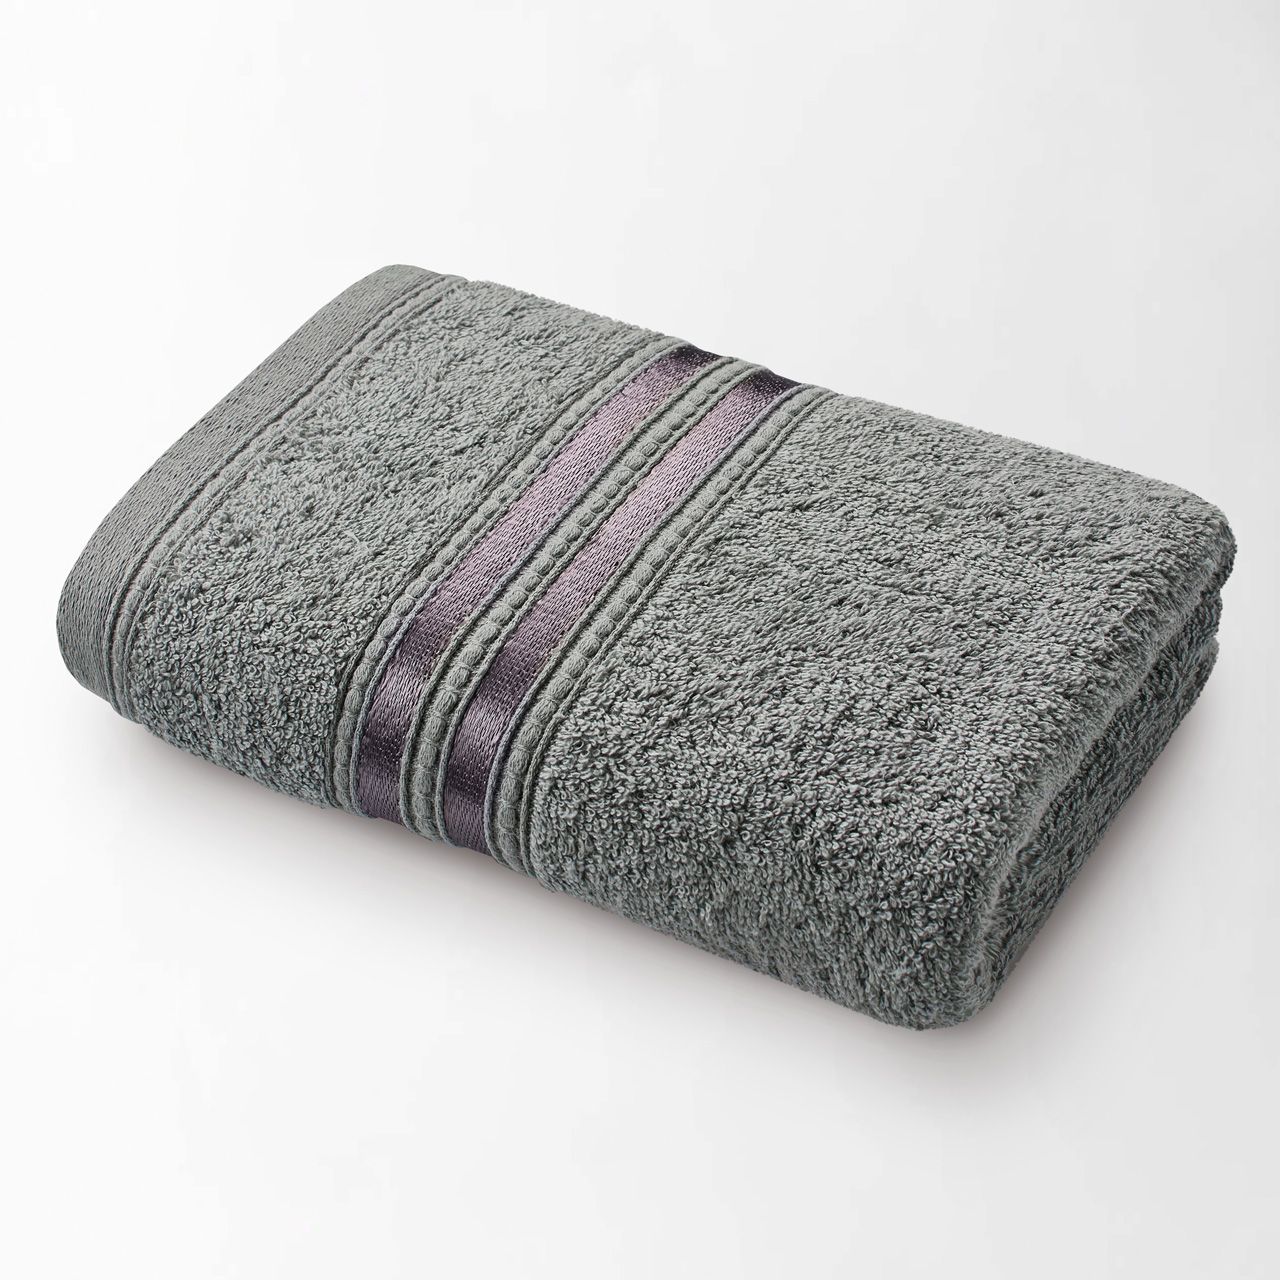 Полотенце Гранд цвет: серый (70х140 см), размер 70х140 см